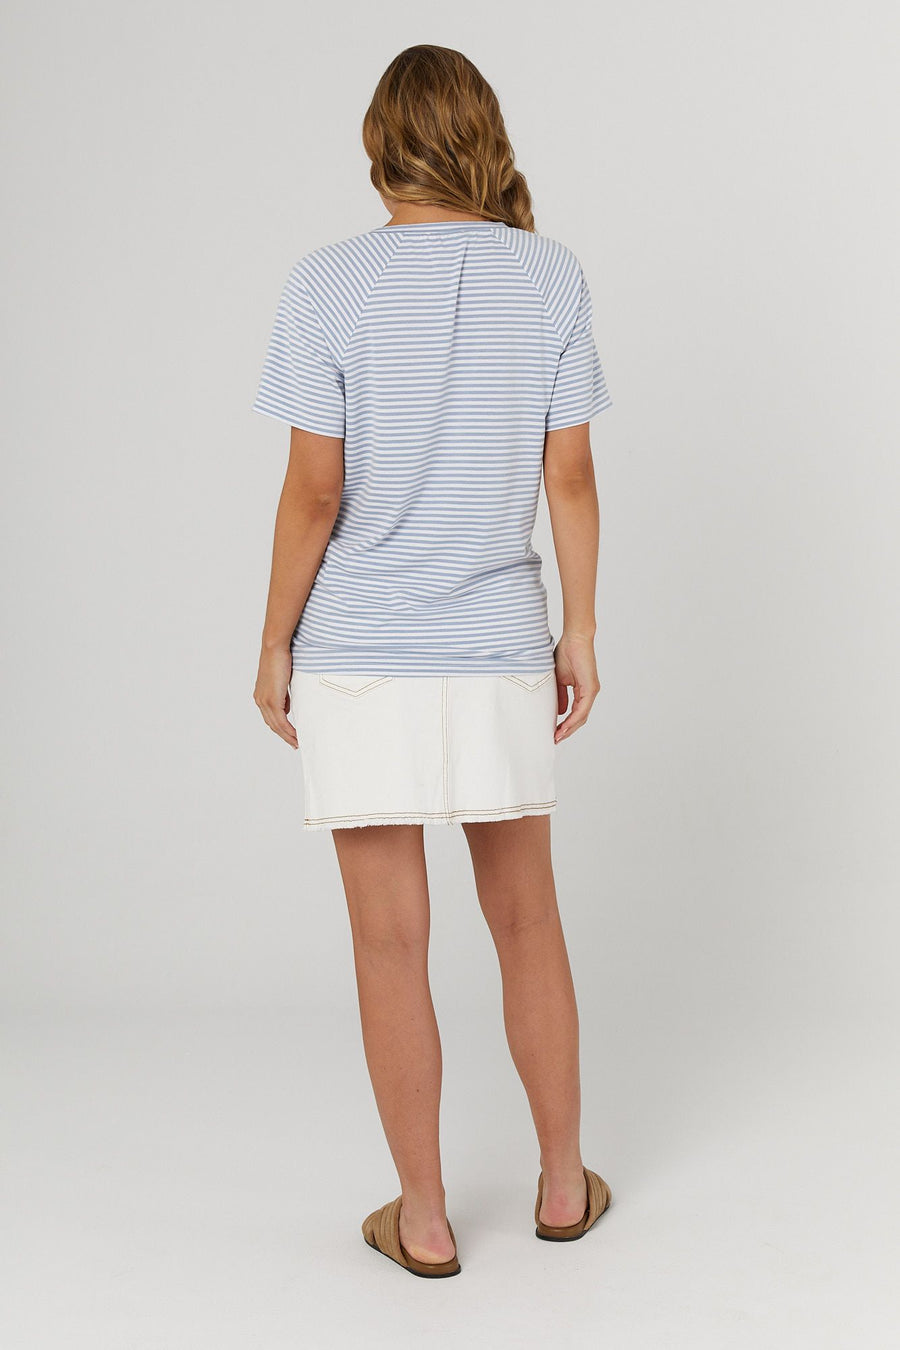 Denim Mini Skirt (White) - FINAL SALE